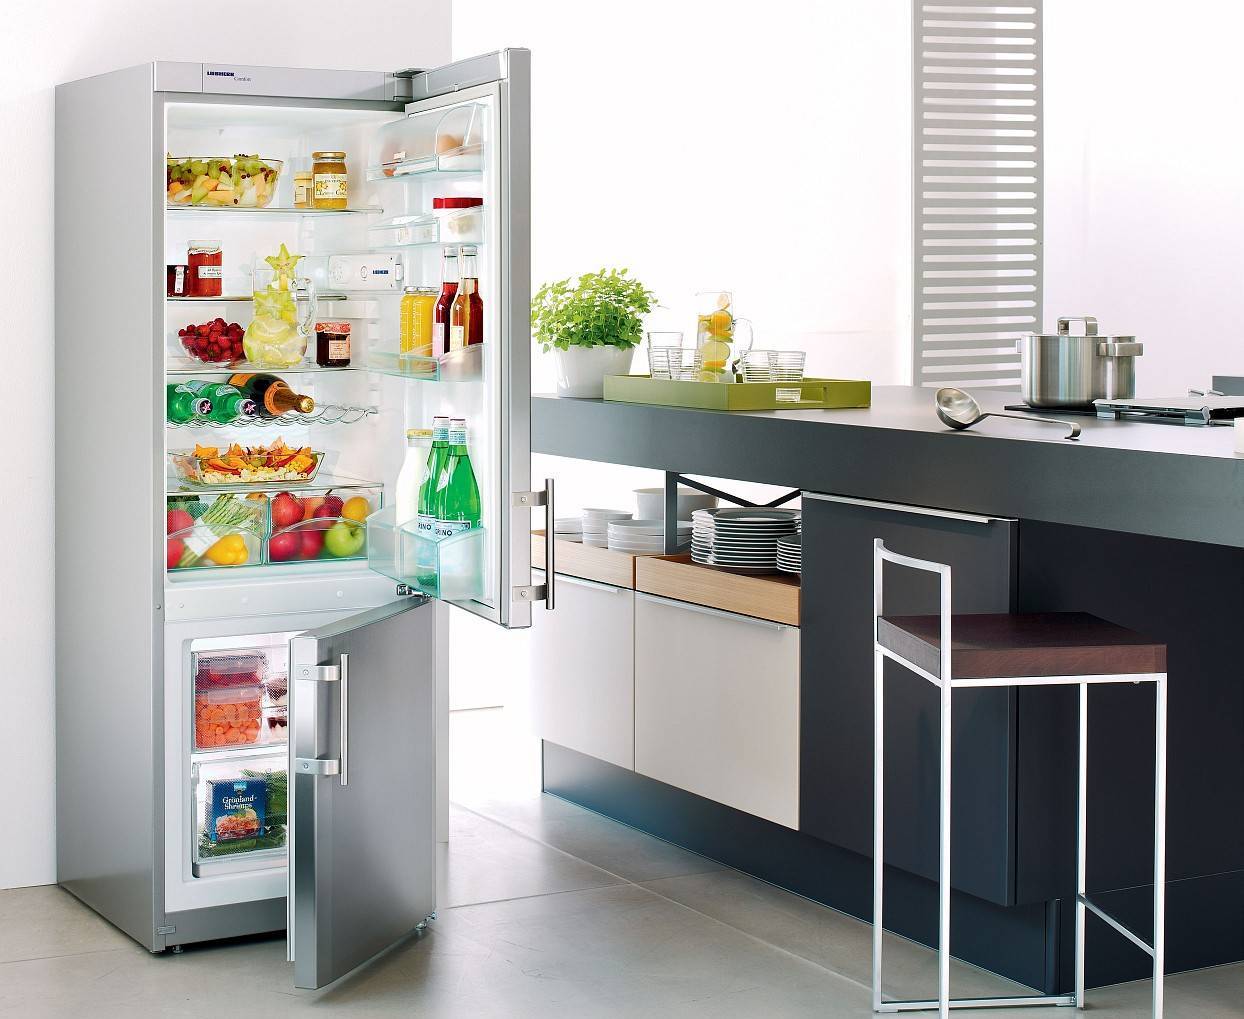 Как выбрать холодильник с системой no frost - рейтинг лучших 2021 года (топ 15)